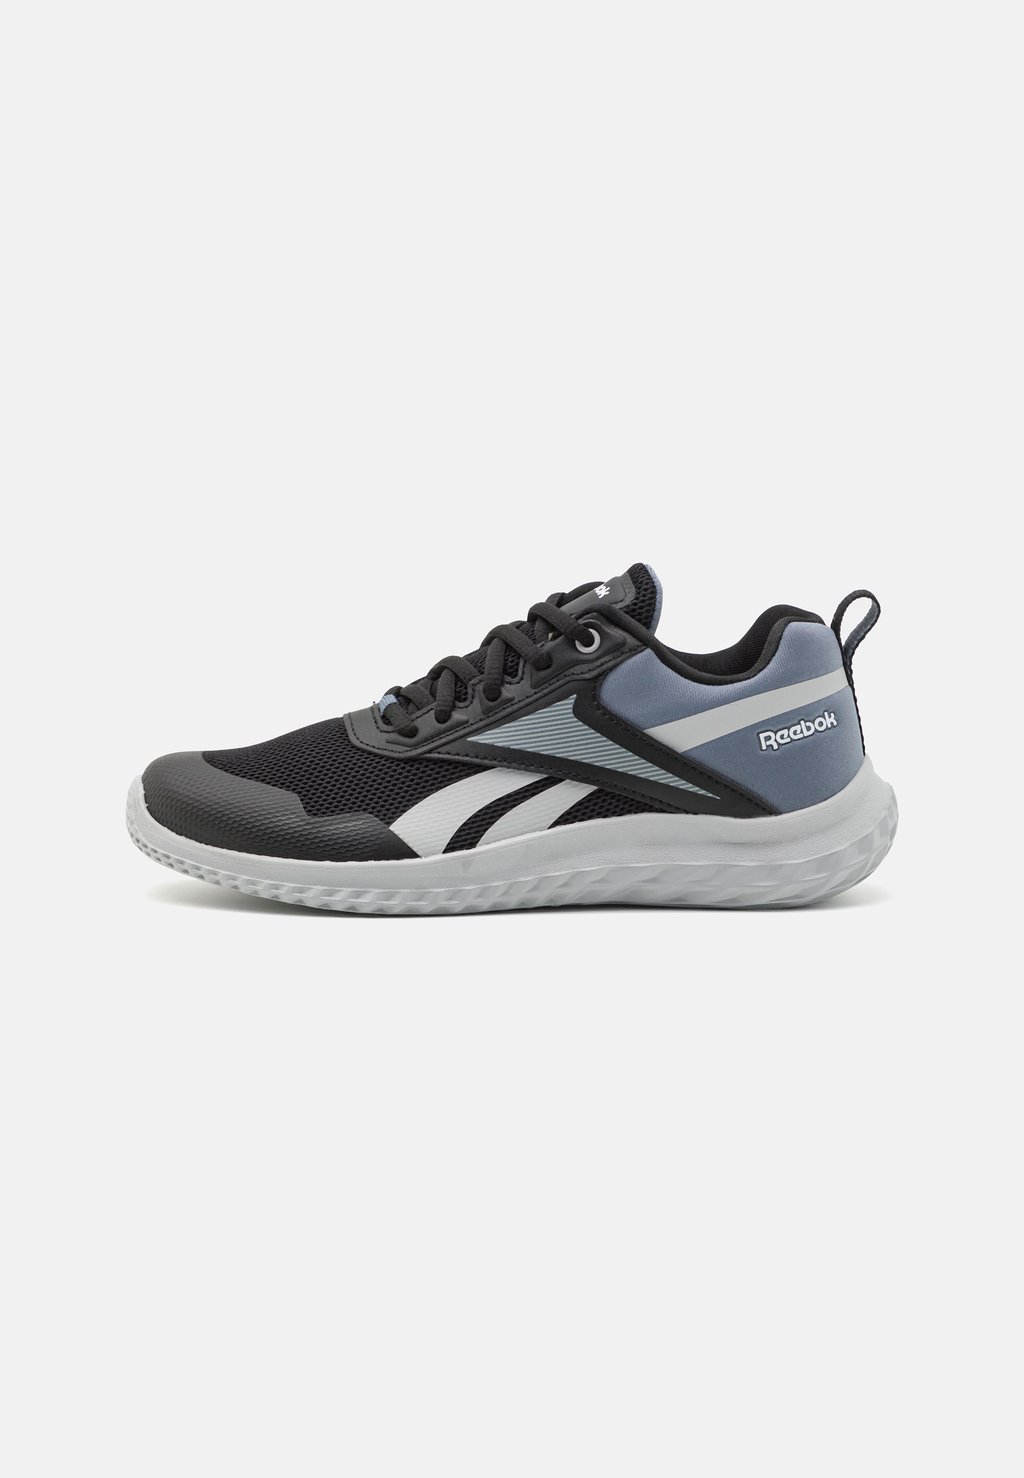 кроссовки для стабилизирующего бега Rush Runner 5 Unisex Reebok, цвет core black/cold grey 4/pure grey 3